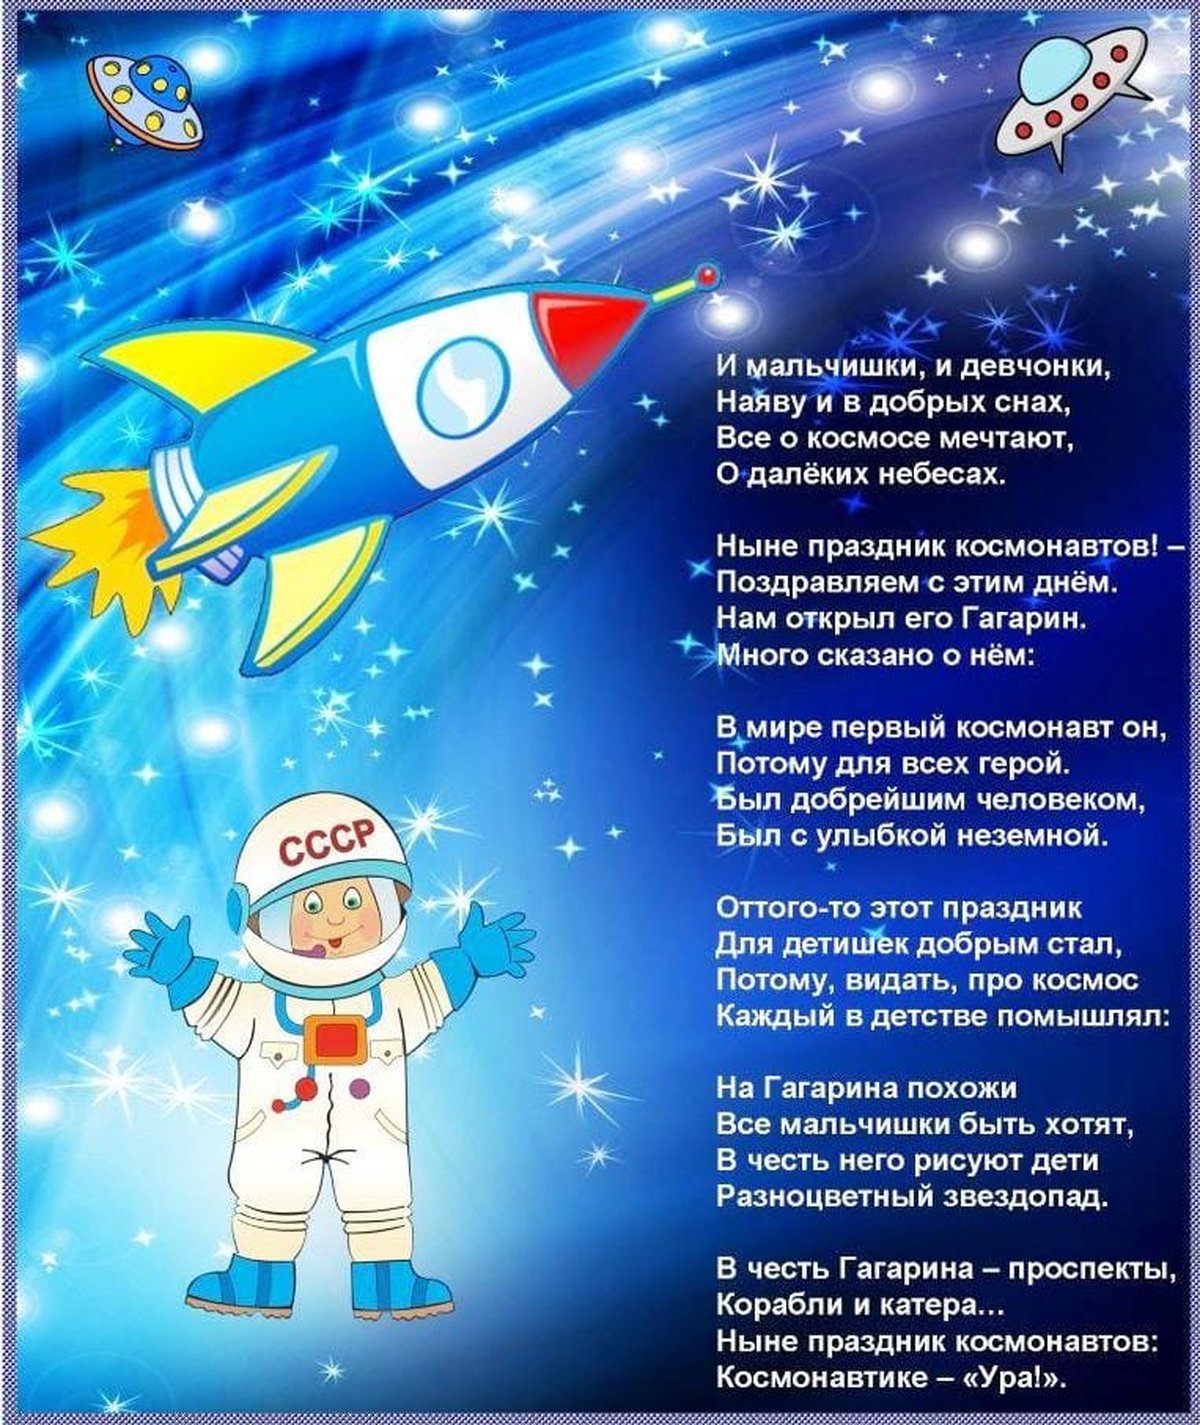 Читаем про космос детям 6 лет. Стихотворение про космос для детей. Стихи о космосе для детей. Стихи про космас для детей. Стишок про космос для малышей.